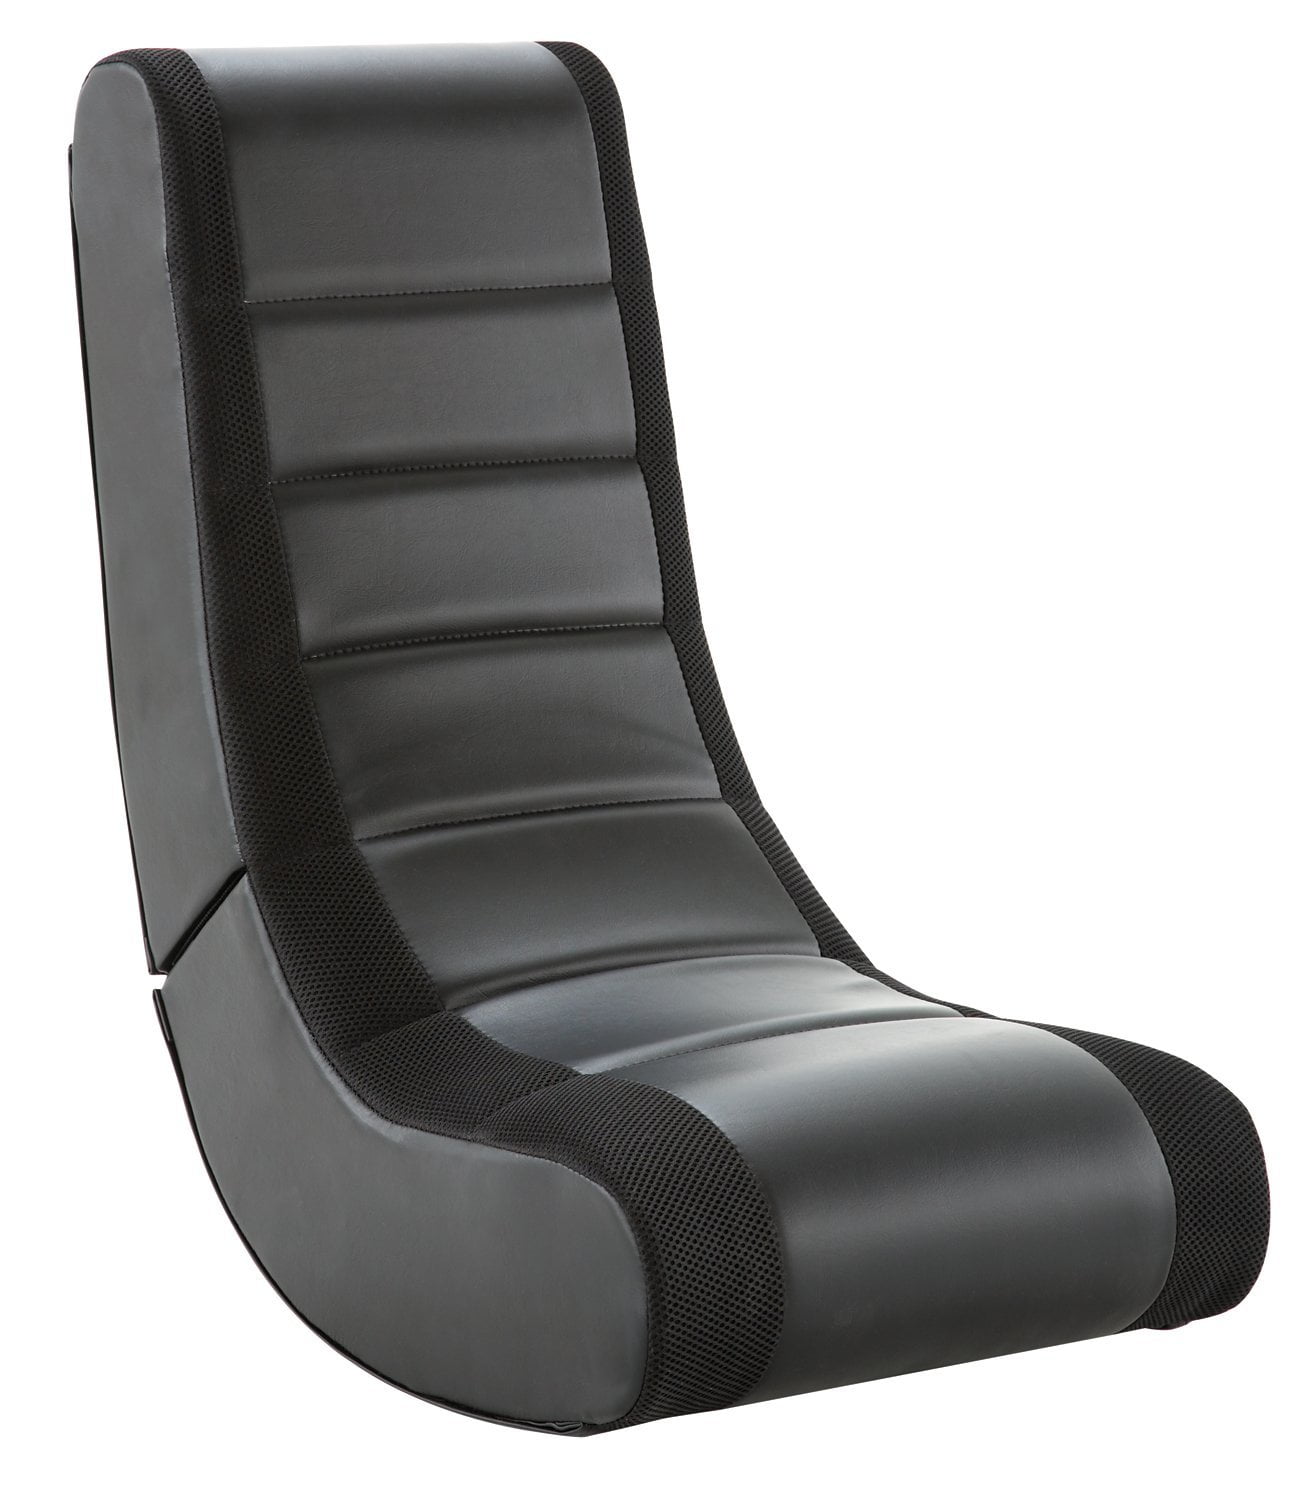 forocean Multifunctional Falt Position Chair Enhancer Bounce Foldable Chair for Šℯ&x Pose Cöuples Love Folding Sê&x Gaming Chair 